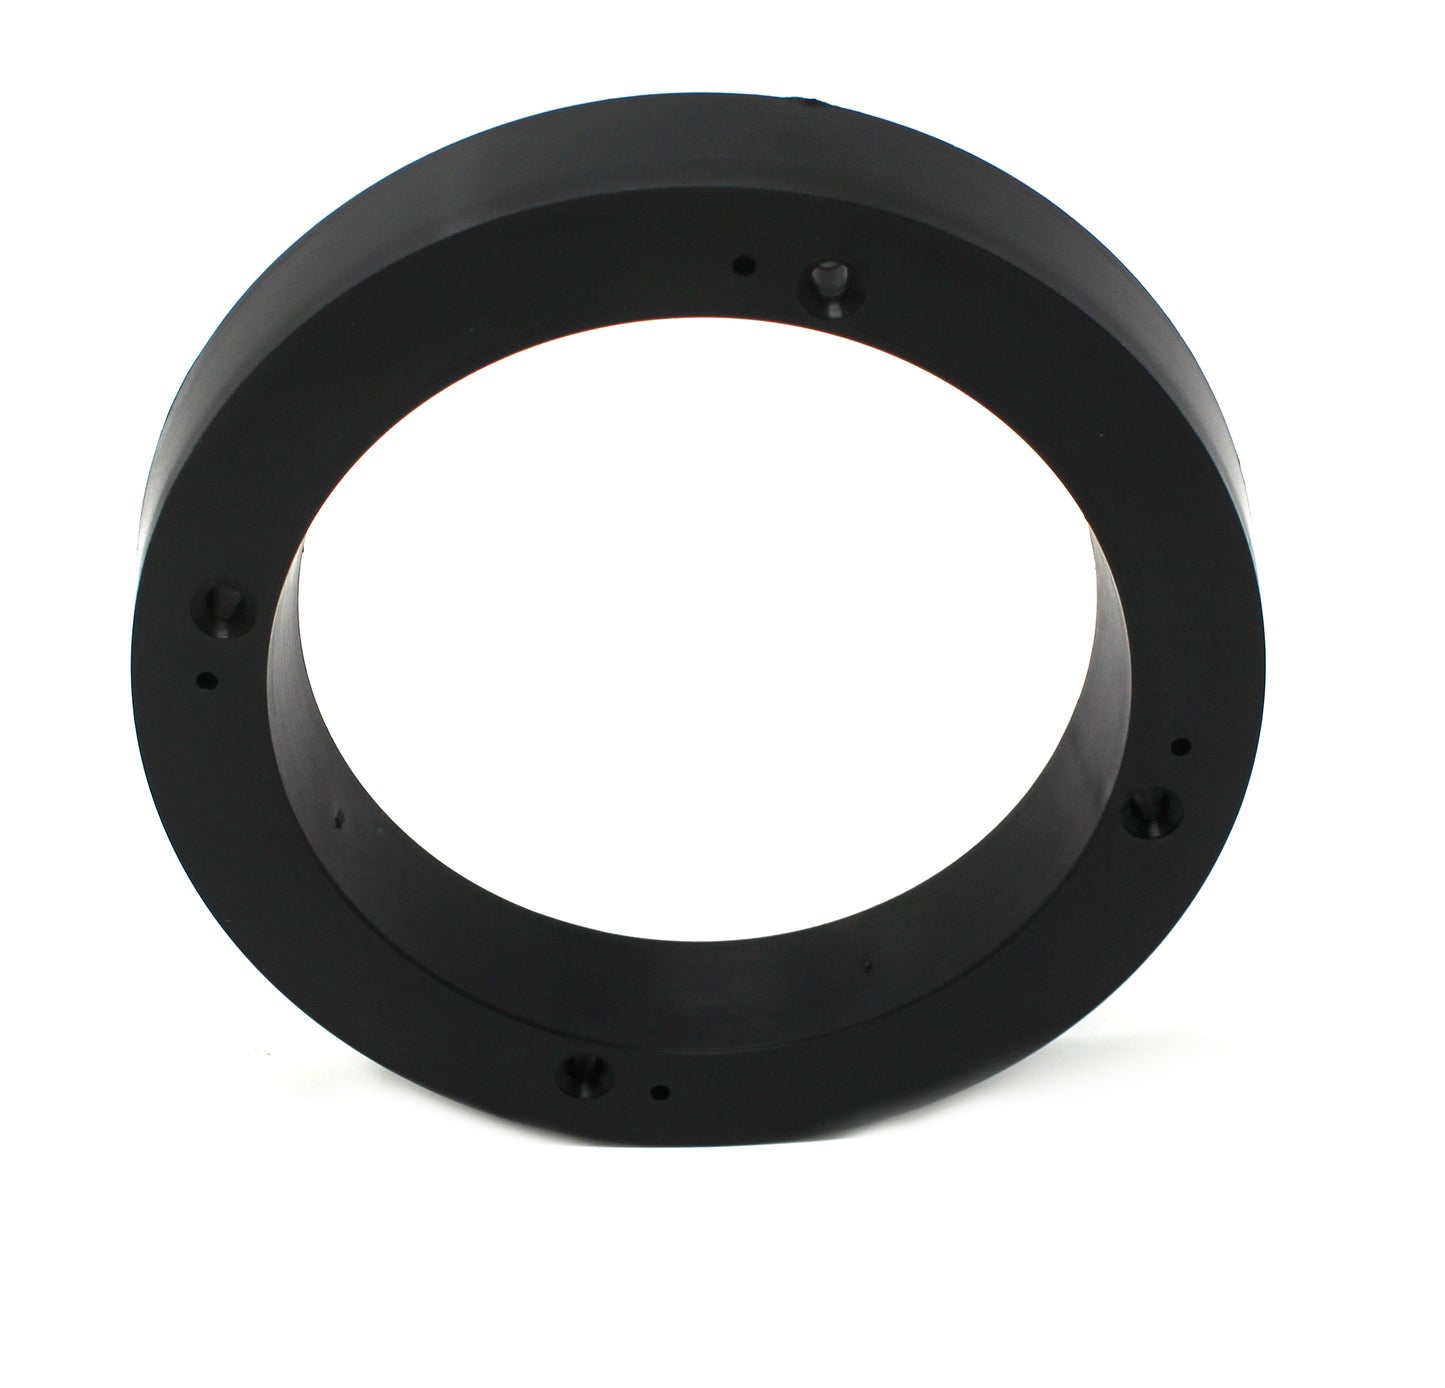 2 Pack Black Plastic 1" Depth Ring Adapter Spacer for 5.25 "- 6" Car Speaker